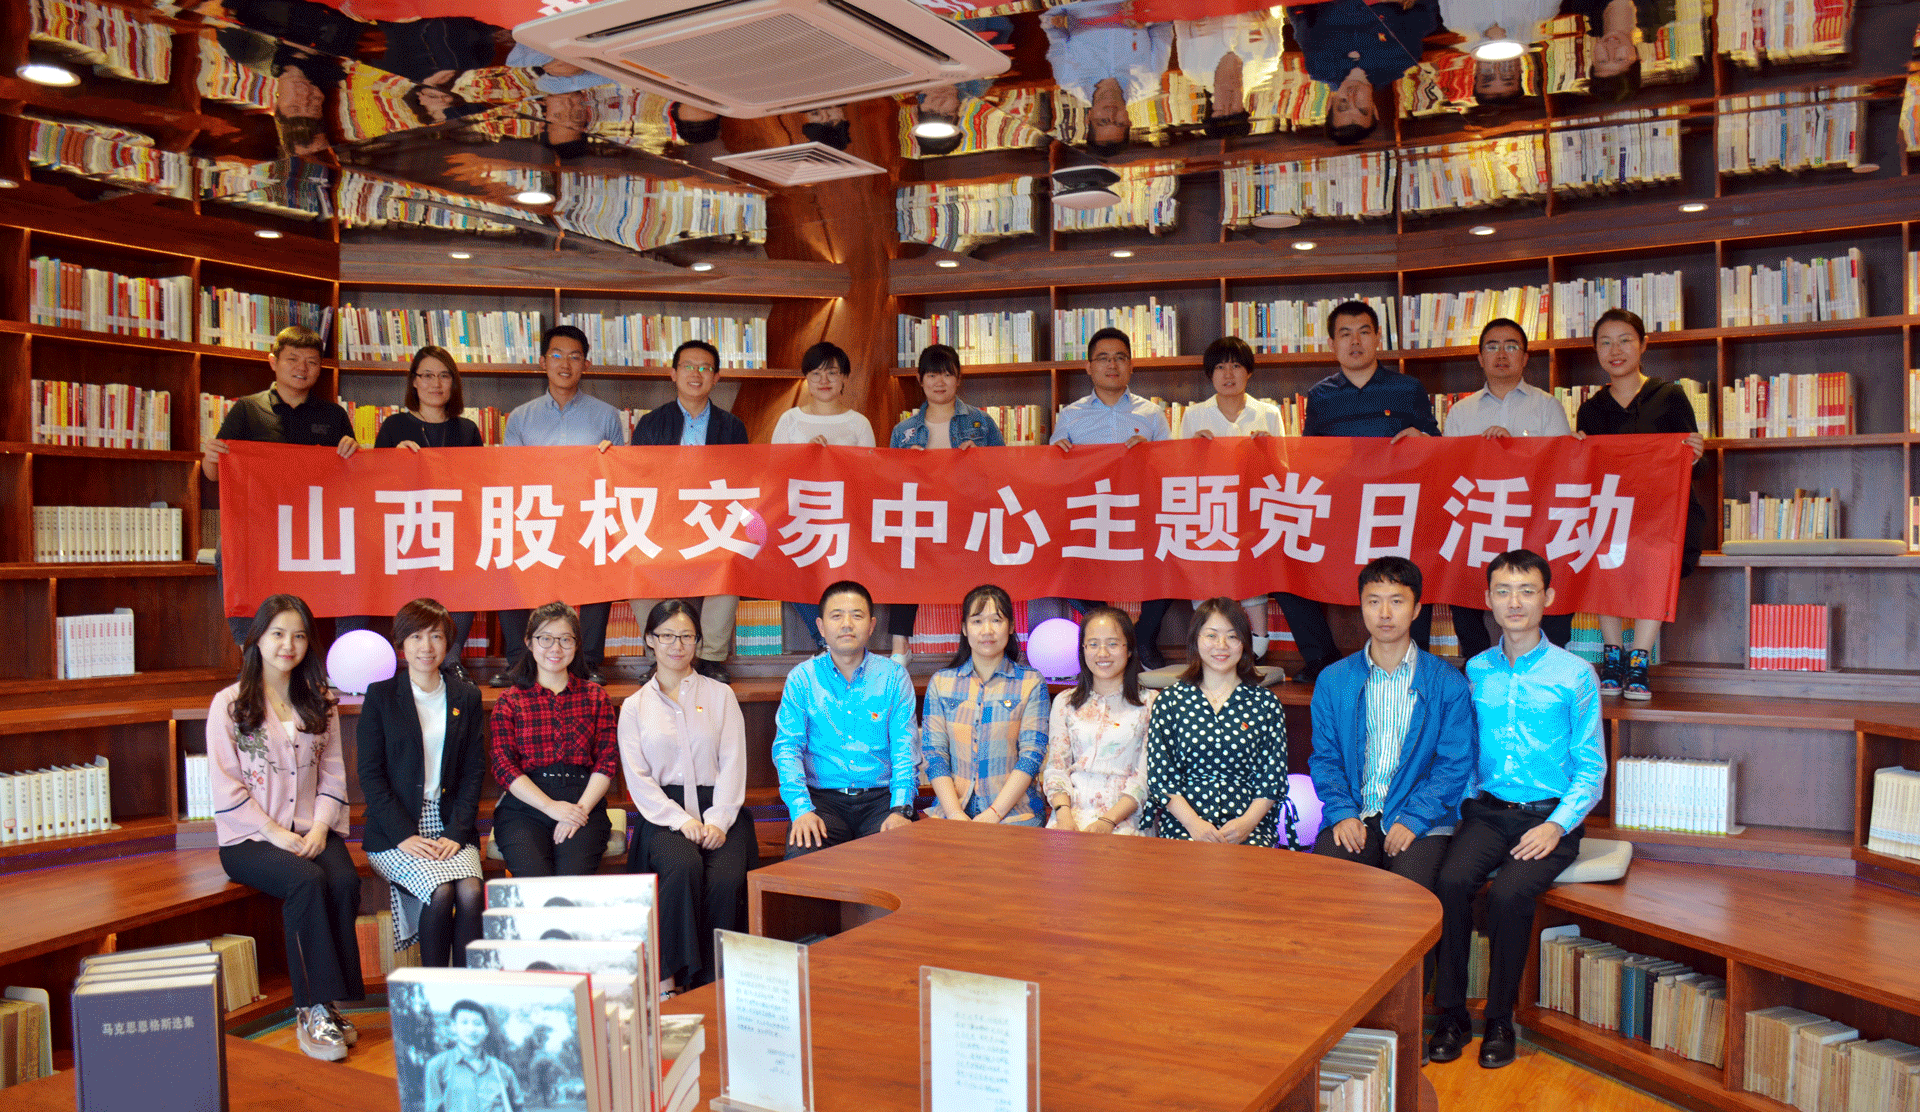 中心党委组织全员赴太原市图书馆参观“马克思书房”